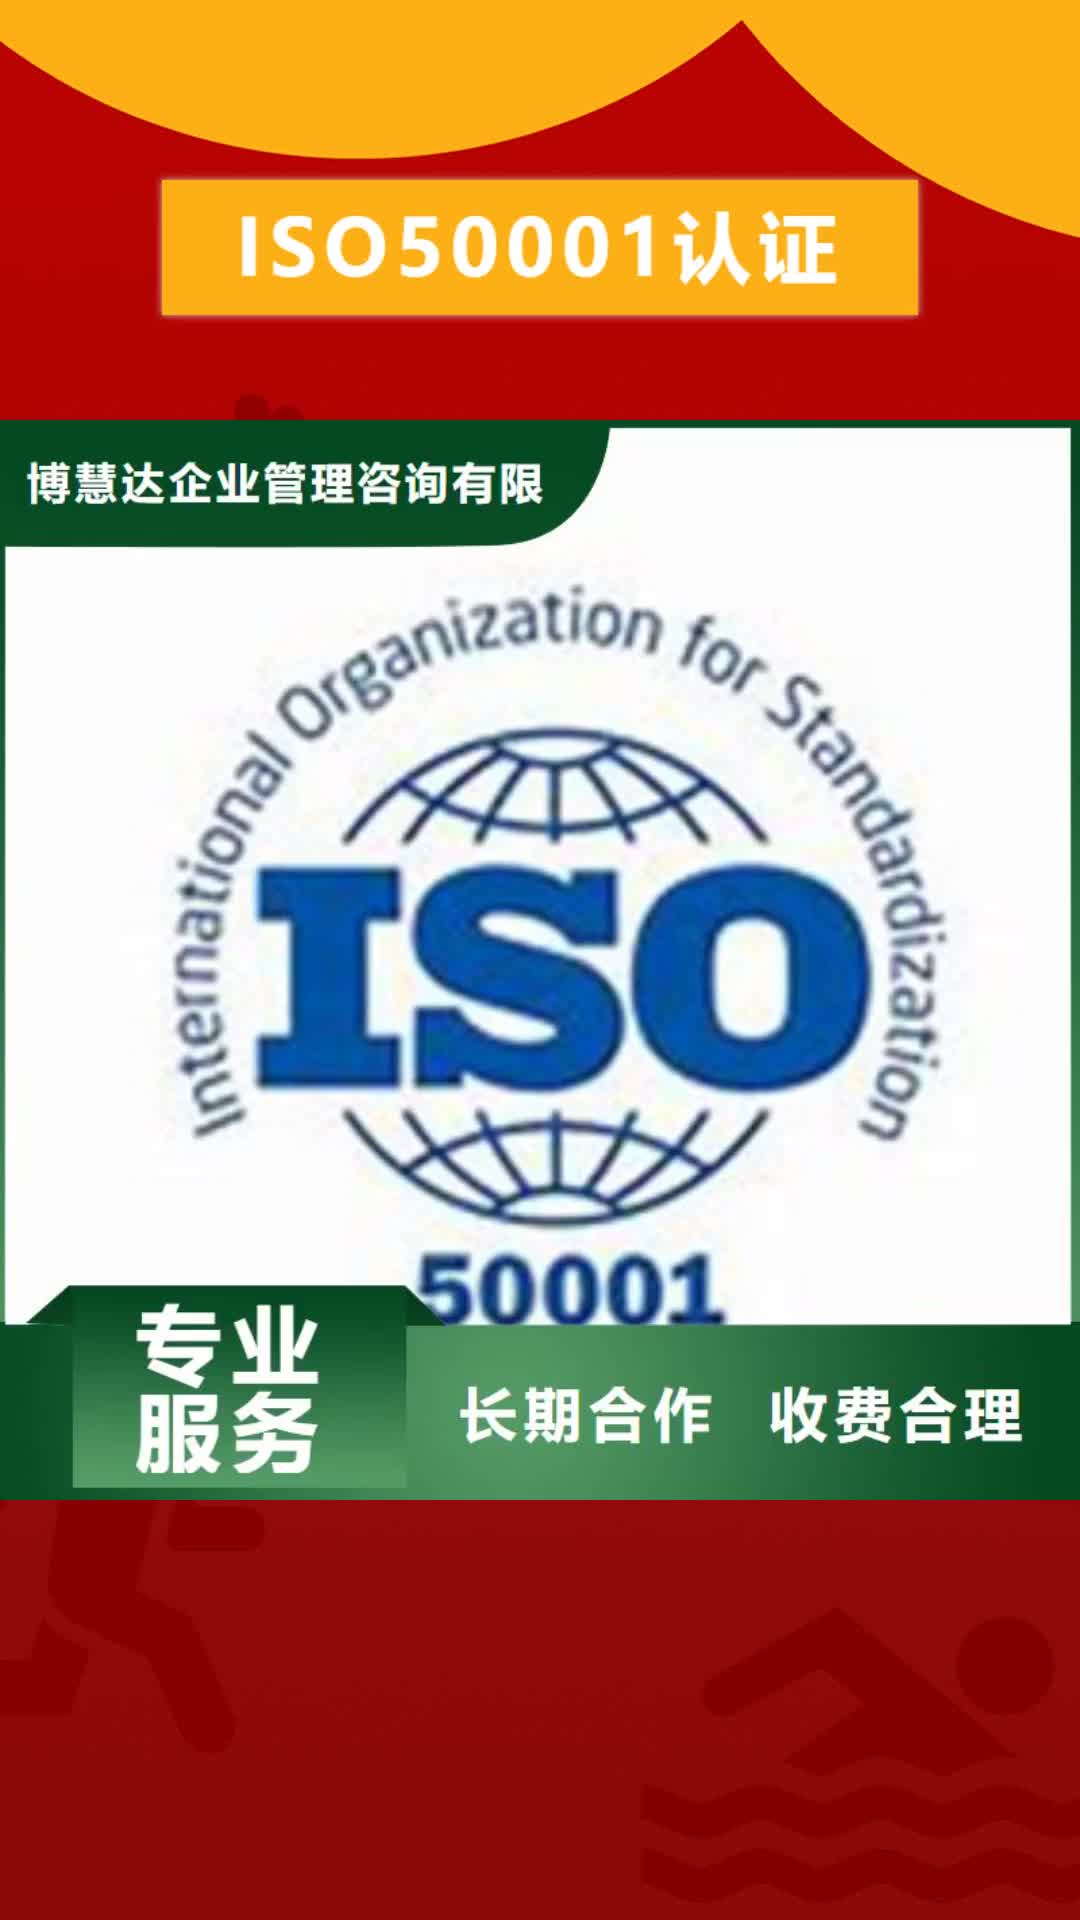 信阳【ISO50001认证】ISO9001\ISO9000\ISO14001认证随叫随到